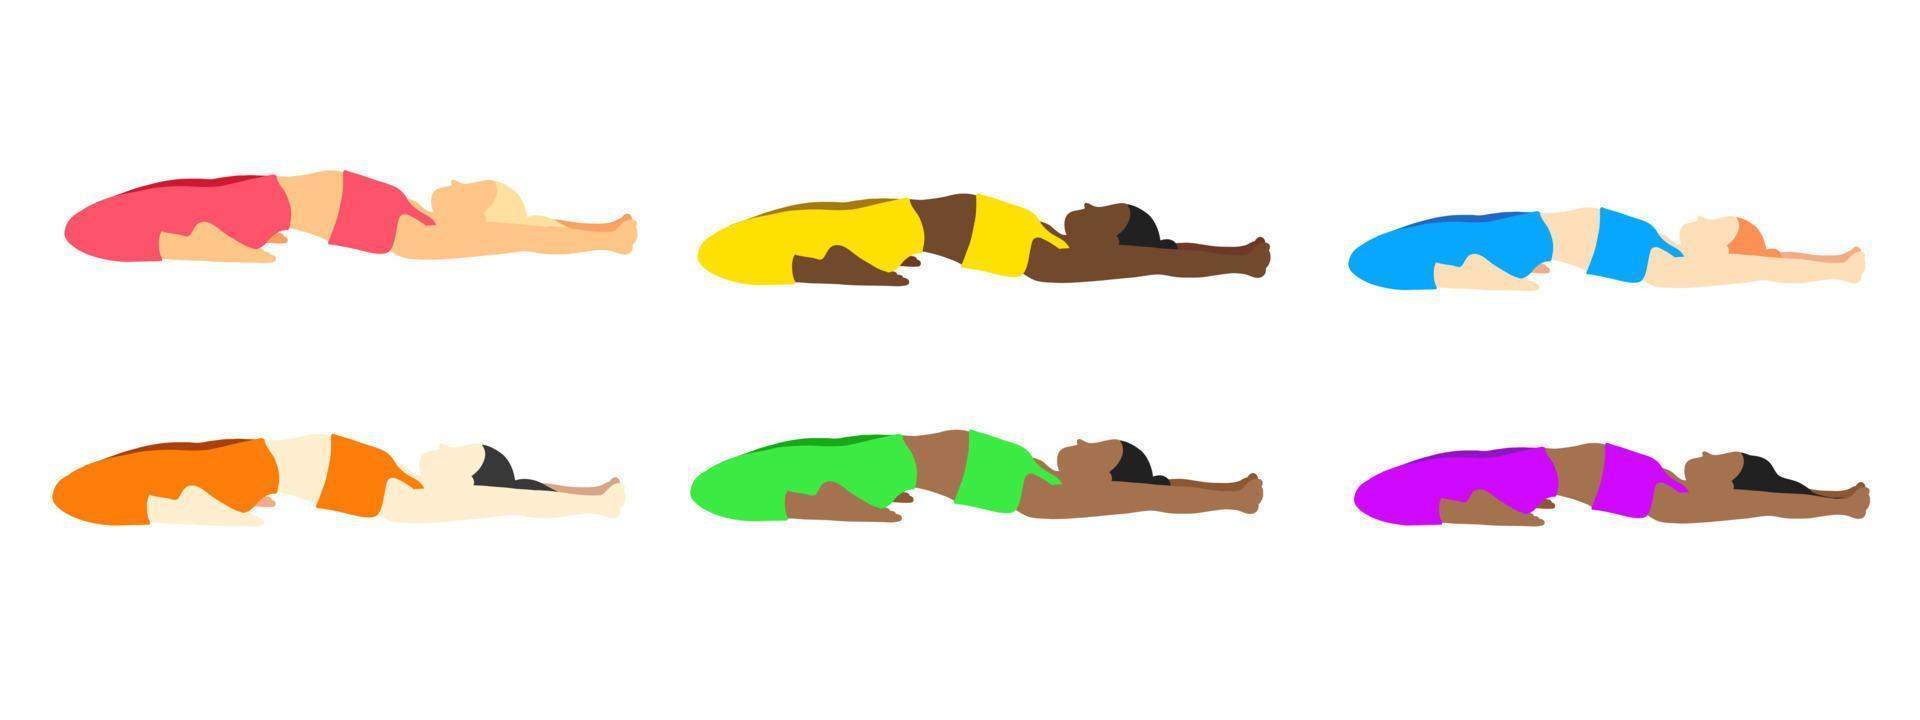 flexibilitet yoga poser samling. europeisk, afrikansk, asiatisk kvinna, lady, kvinna, flicka. pilates, mental hälsa, Träning, Gym. vektor illustration i tecknad serie platt stil isolerat på vit bakgrund.